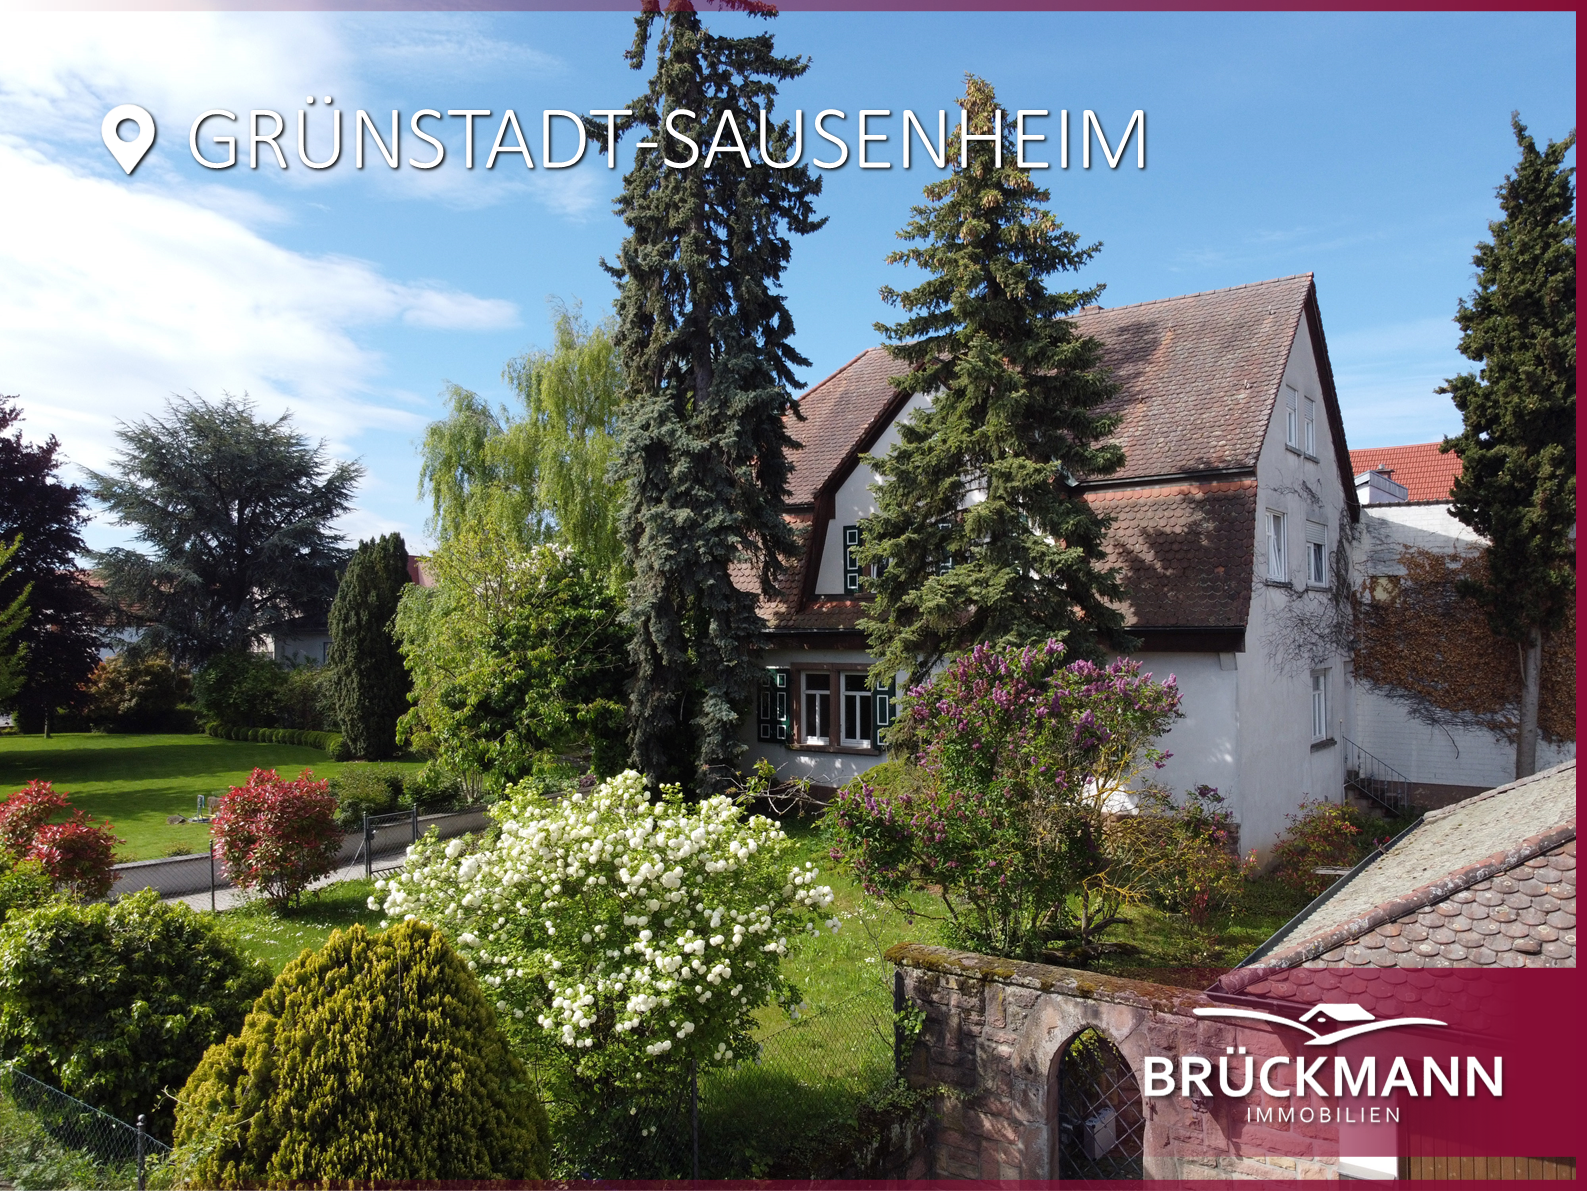 Leben & arbeiten Sie stilvoll in einem traumhaften Altbau inmitten des Weinorts Sausenheim!, 67269 Grünstadt-Sausenheim, Einfamilienhaus